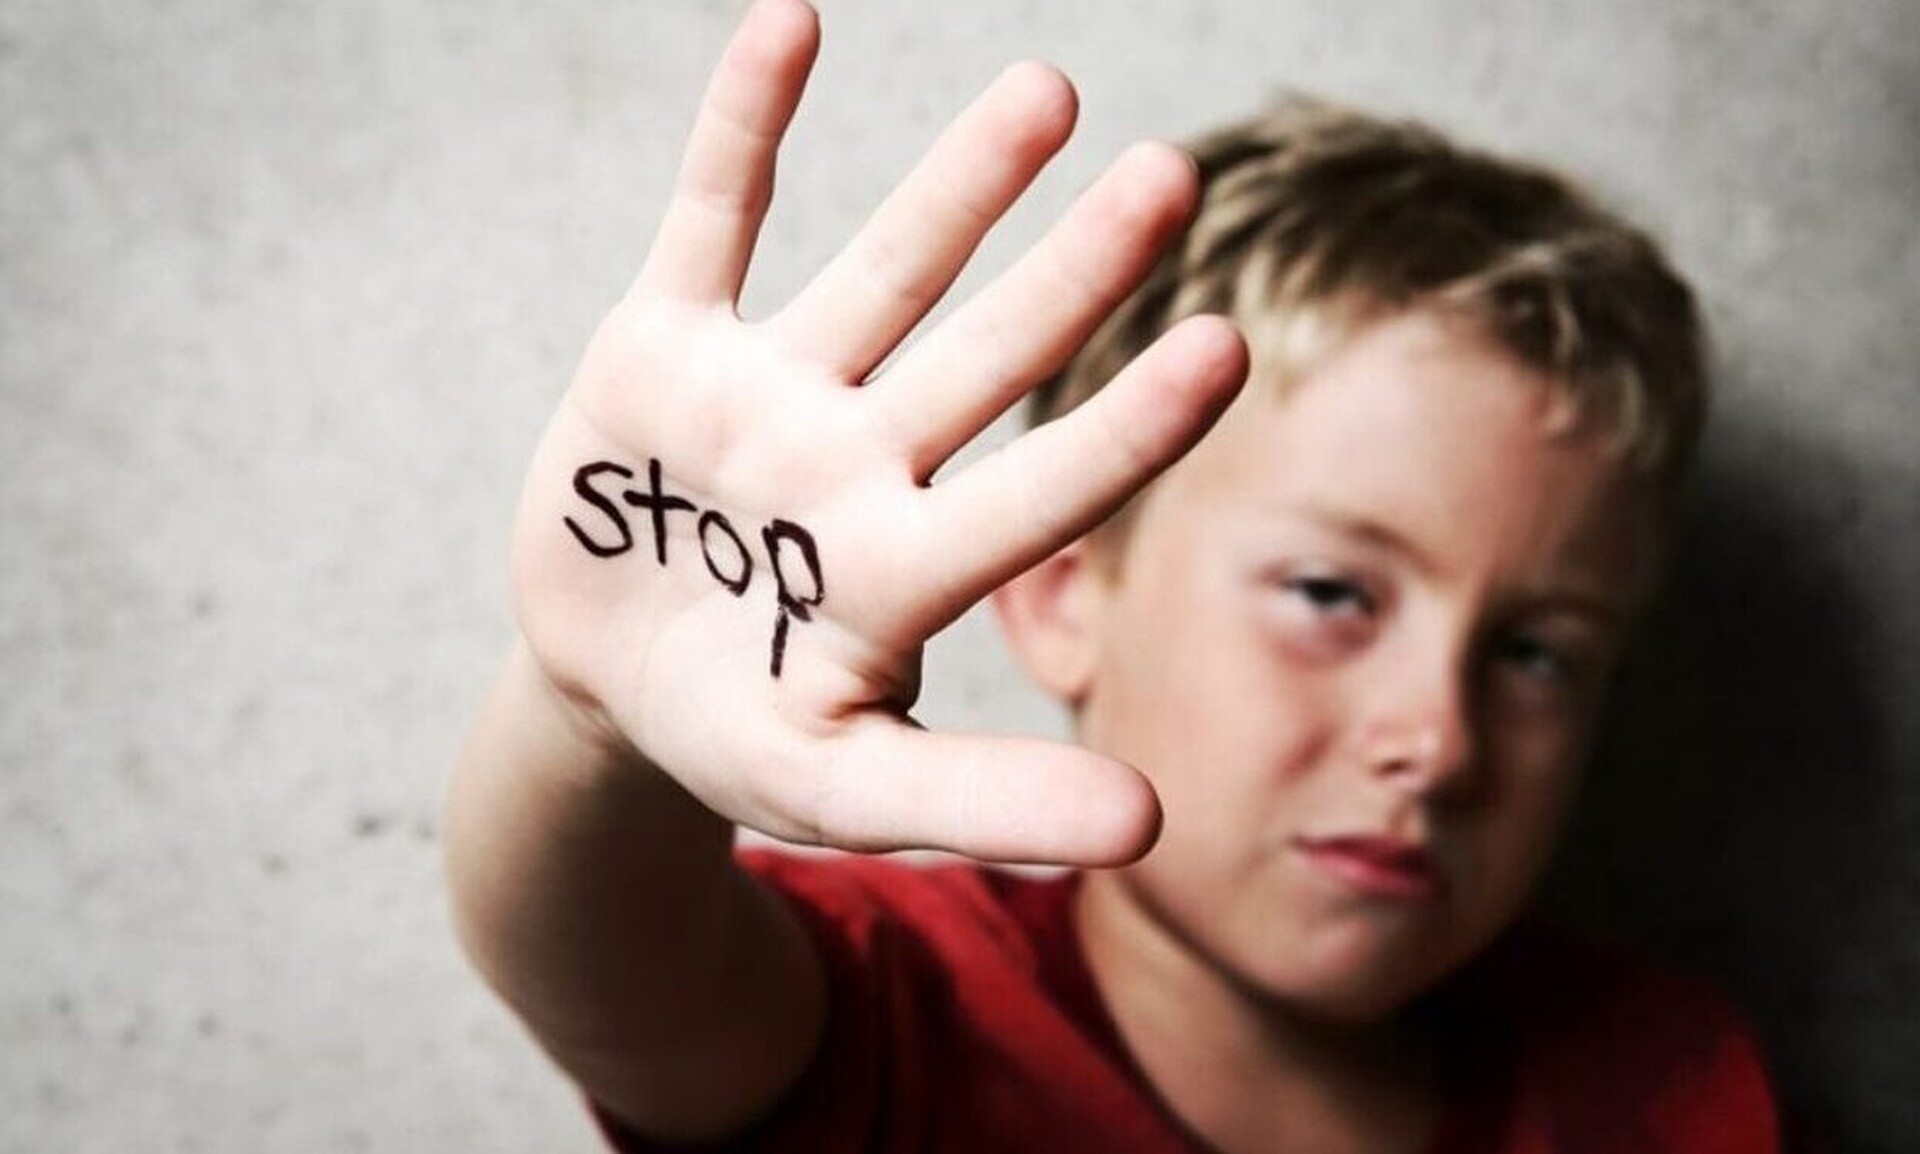 Πάνω από 300 εκατ. παιδιά πέφτουν θύματα σεξουαλικής κακοποίησης ετησίως σύμφωνα με έρευνα